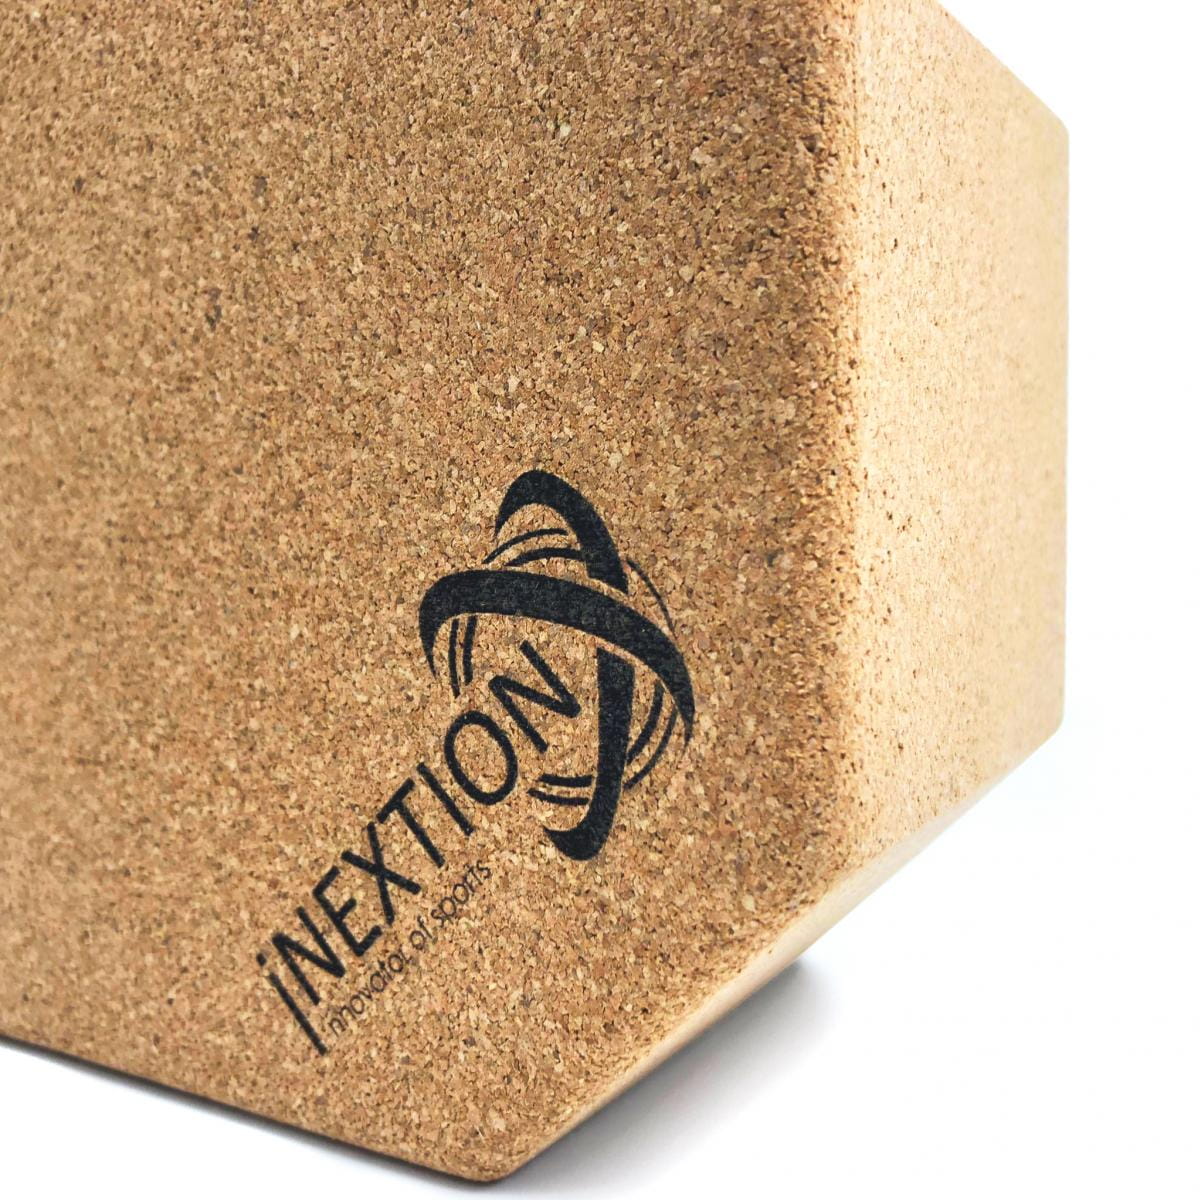 【INEXTION】Cork Yoga Block 羽量級八角軟木瑜珈磚 60D 8